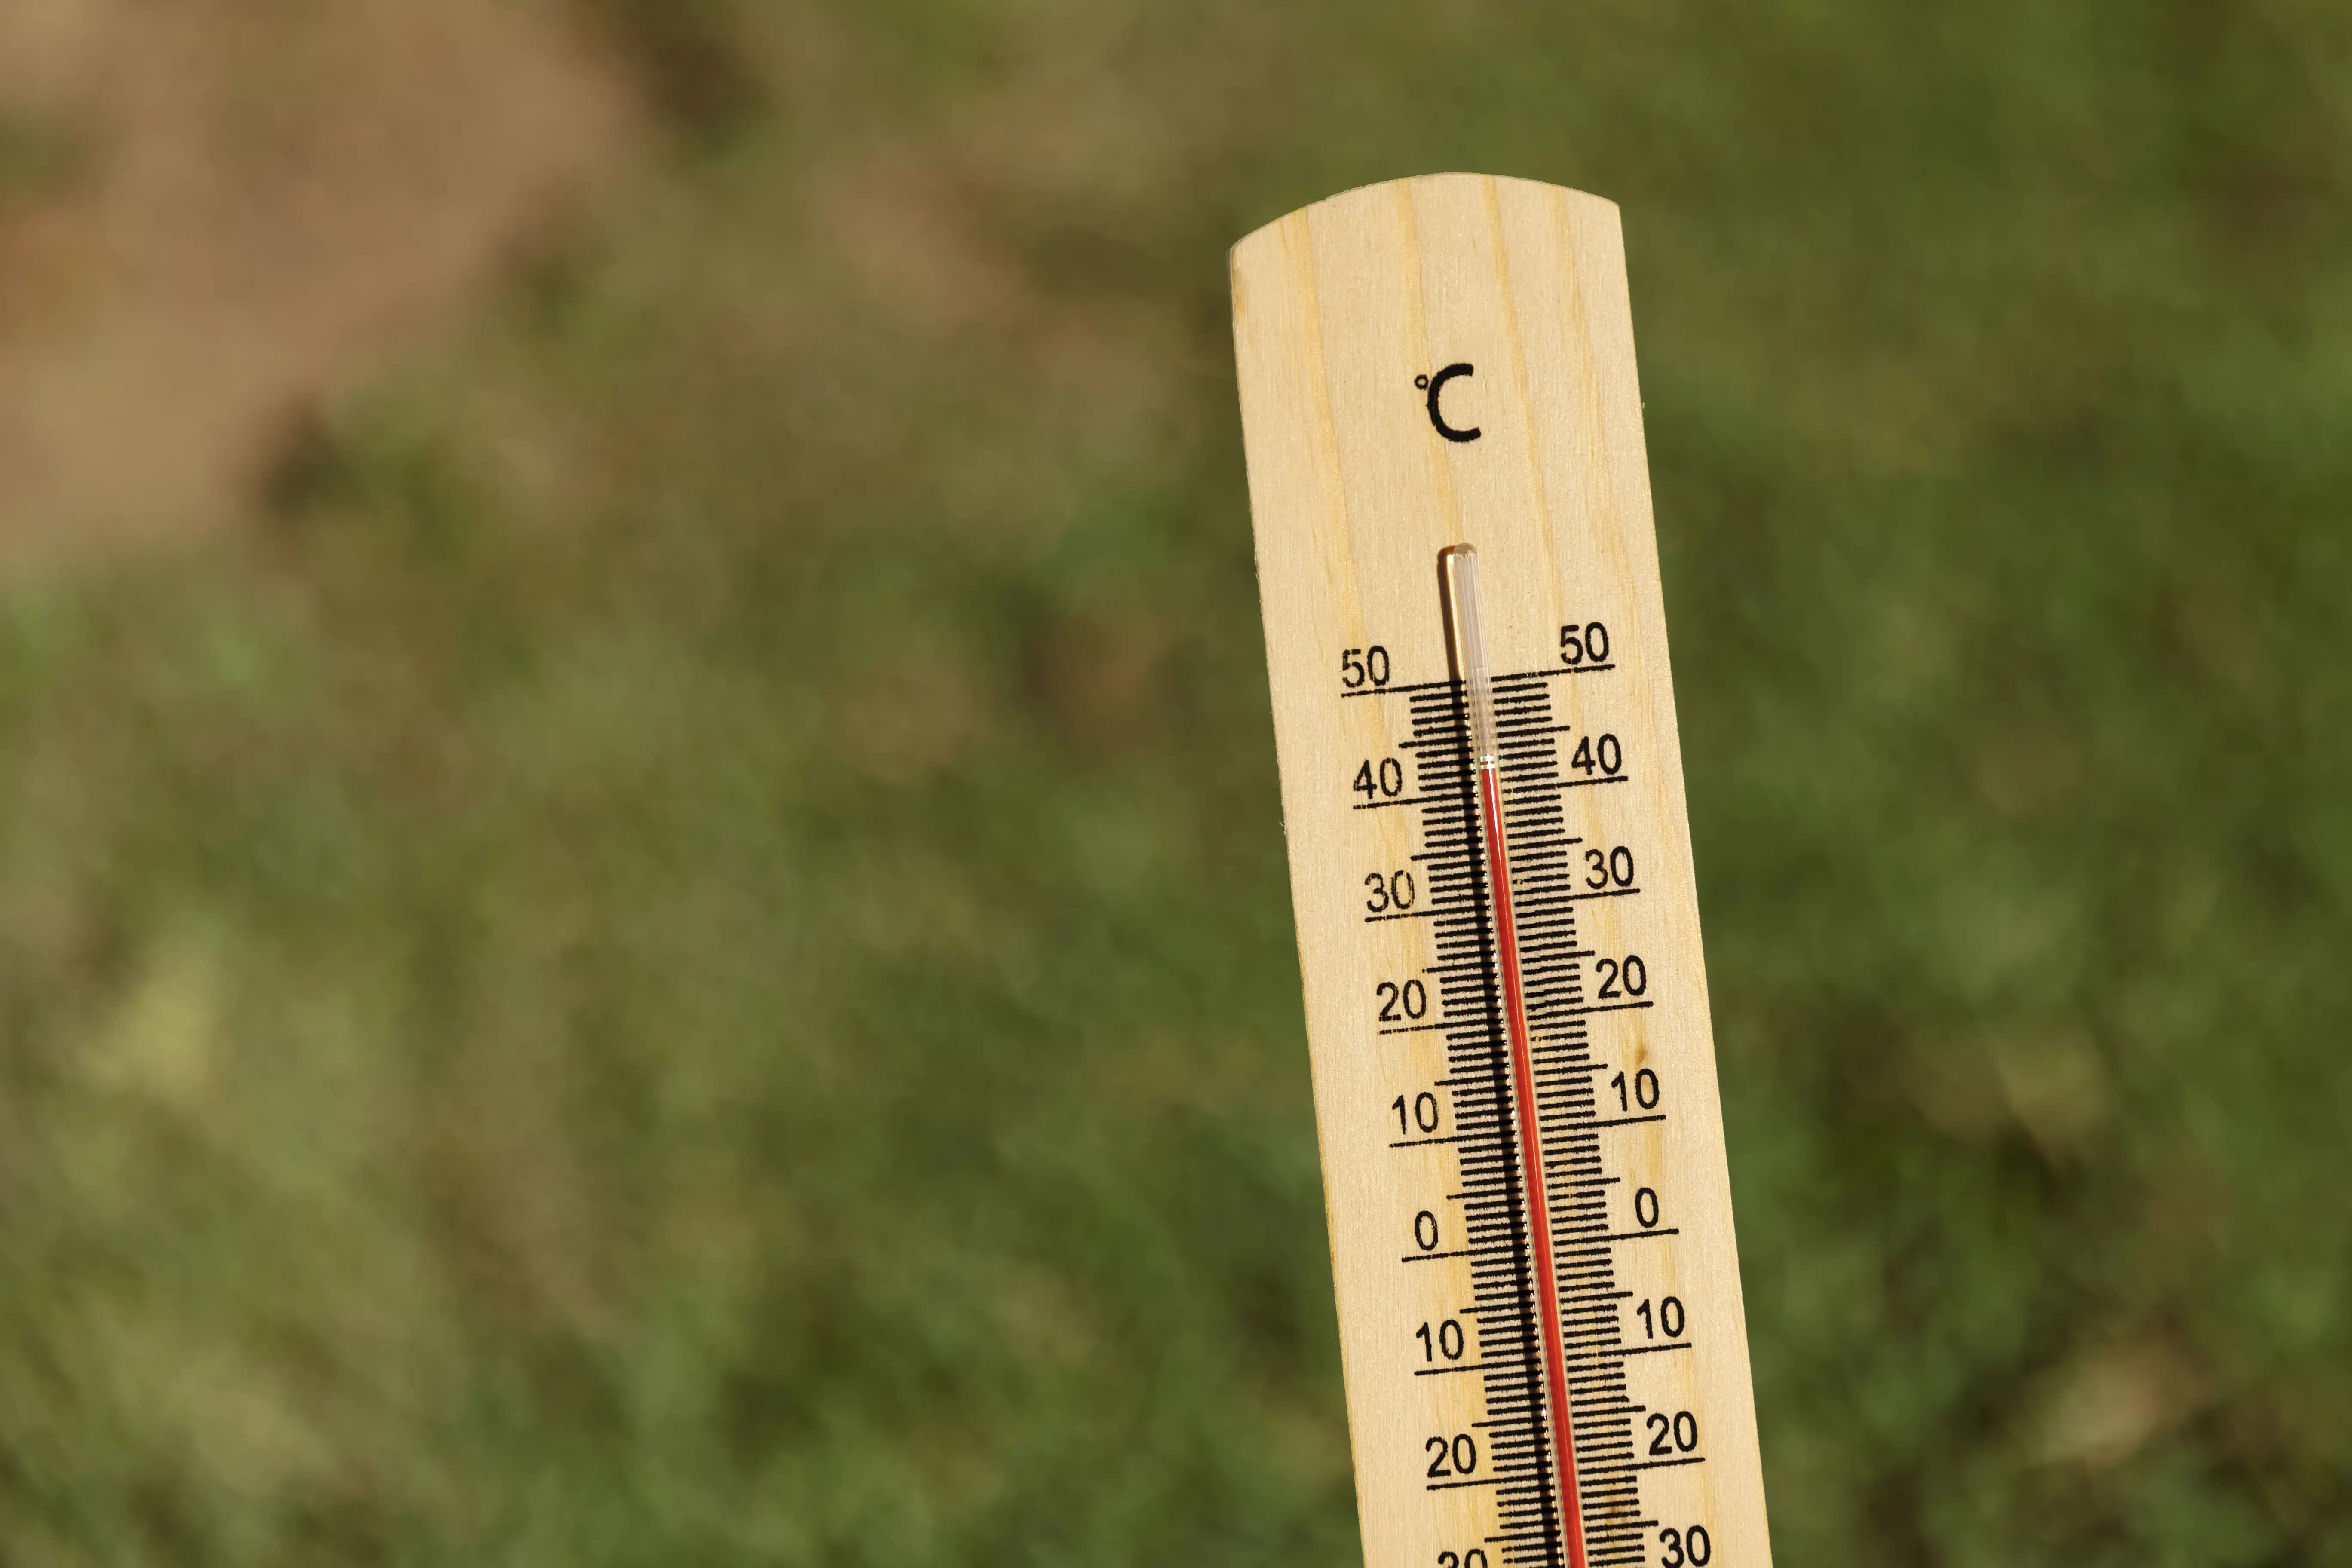 Primero plano: termómetro ambiental indicando altas temperaturas